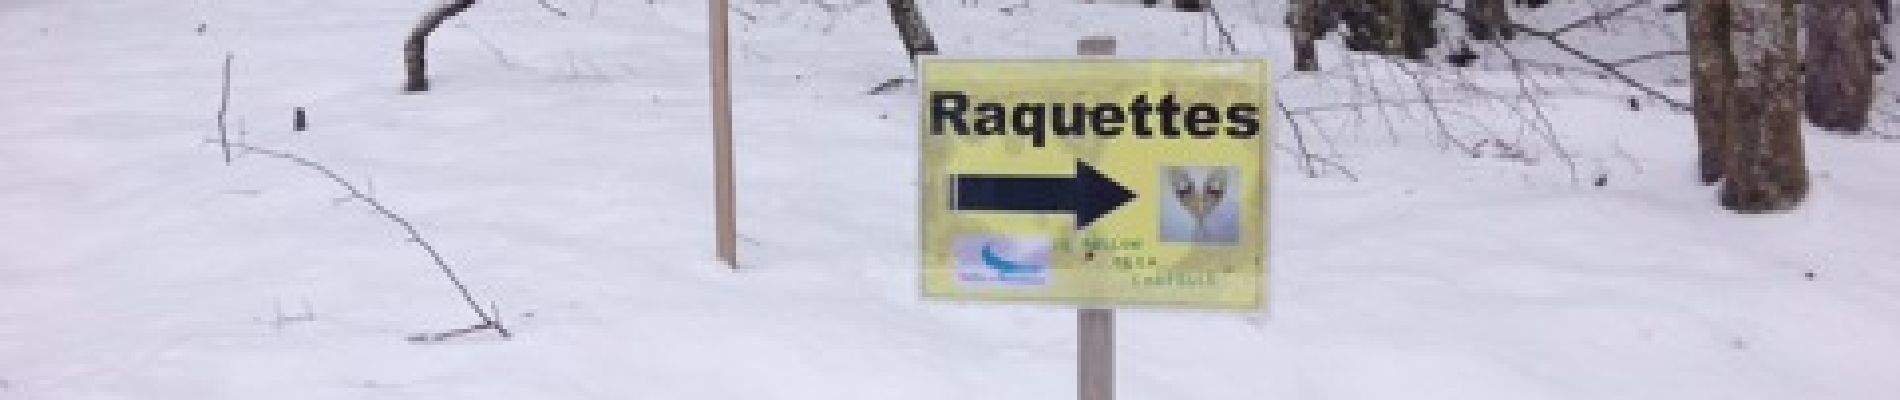 Excursión Raquetas de nieve Châtel - Châtel tennis - Chapelle d'Abond - Photo